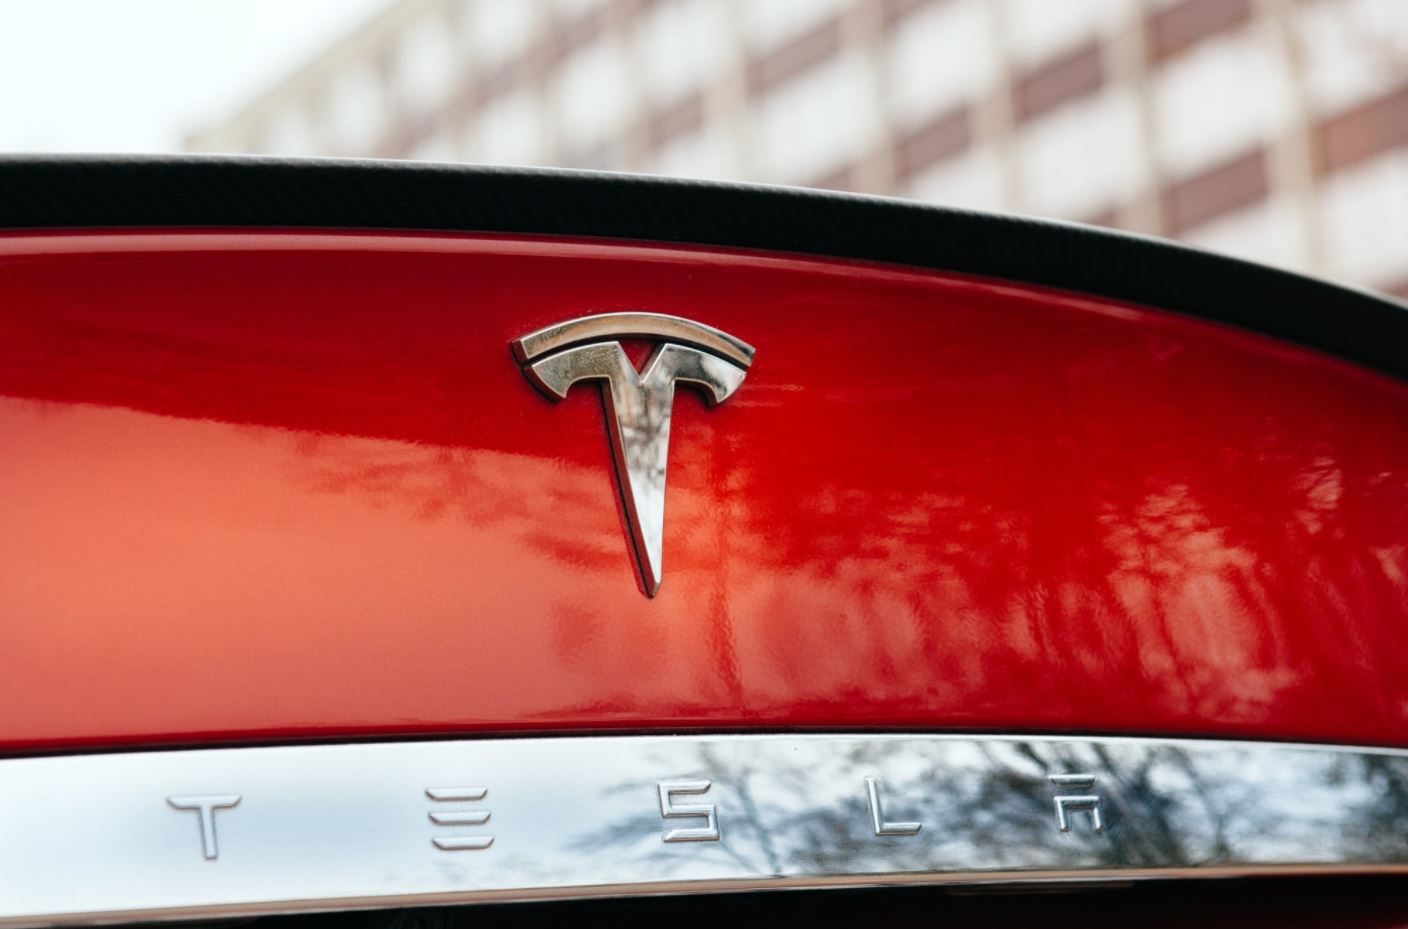 Elon Musk, Tesla'nın sadece elektrikli araç üreticisi olmadığını, dünyanın en güçlü yazılım ekibi olmak için yapay zeka alanına gireceklerini söyledi.